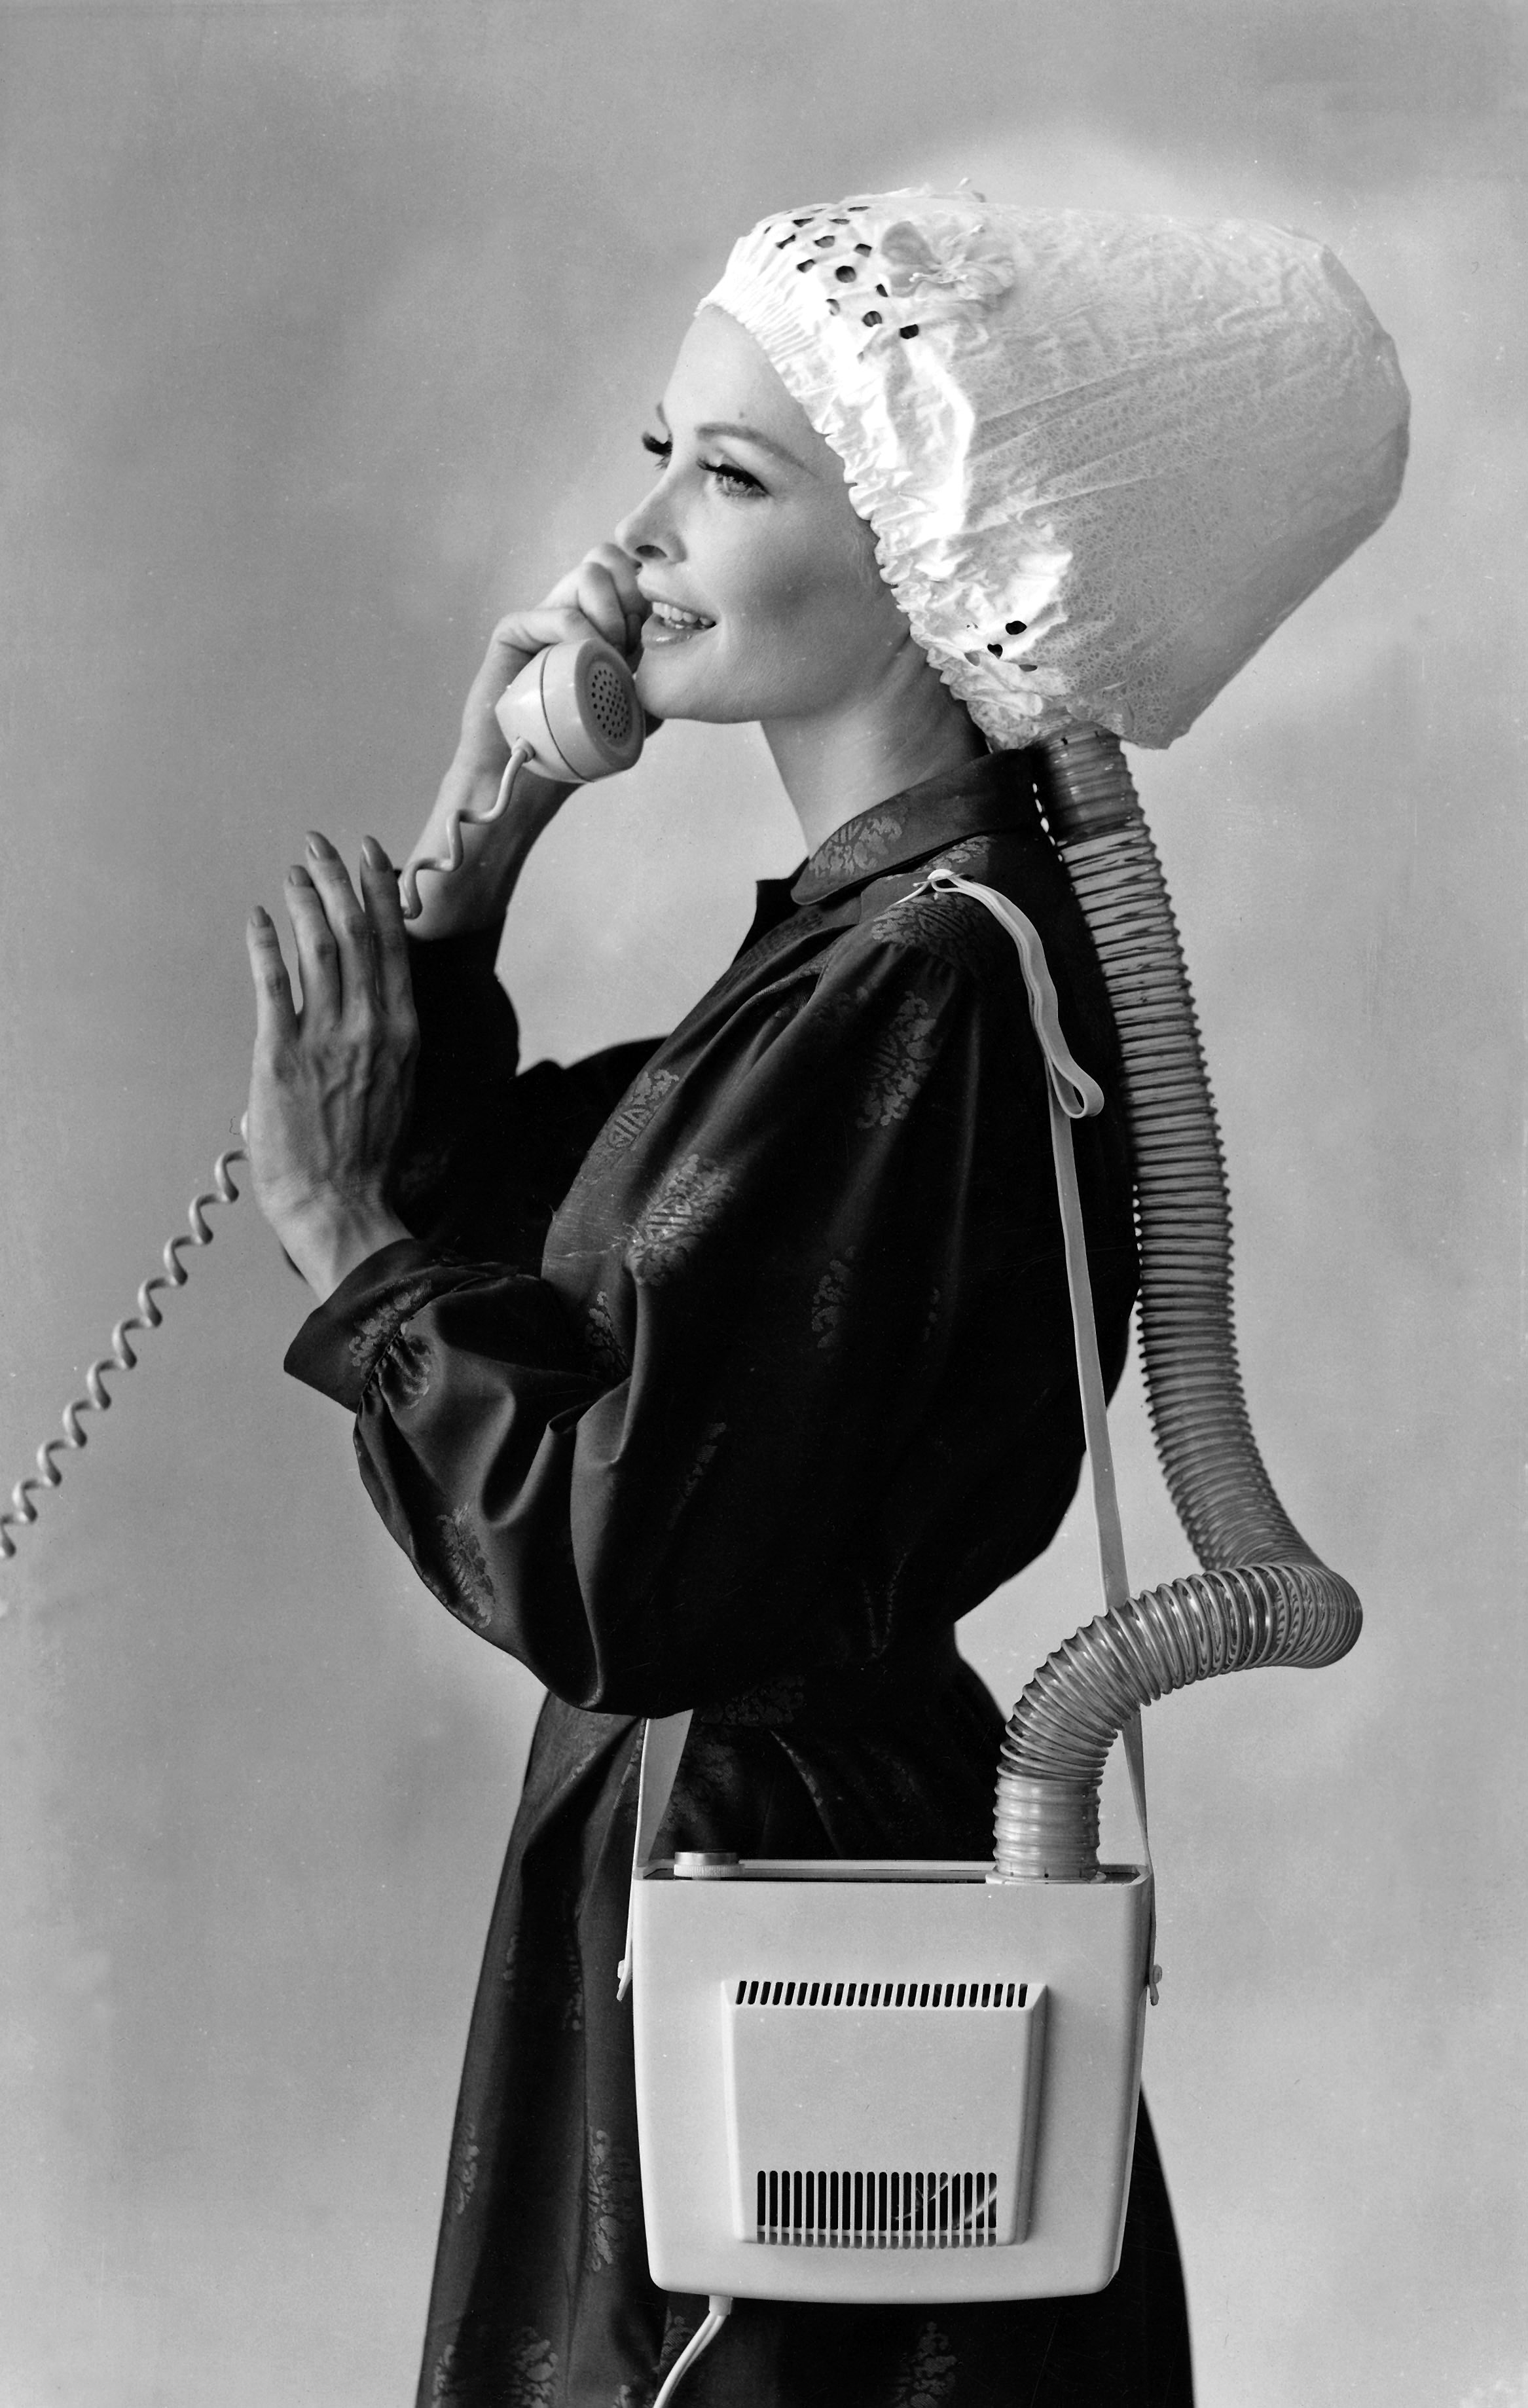 Den portabla hårtorken gav på 60-talet större rörlighet till kvinnor som ville fixa håret.